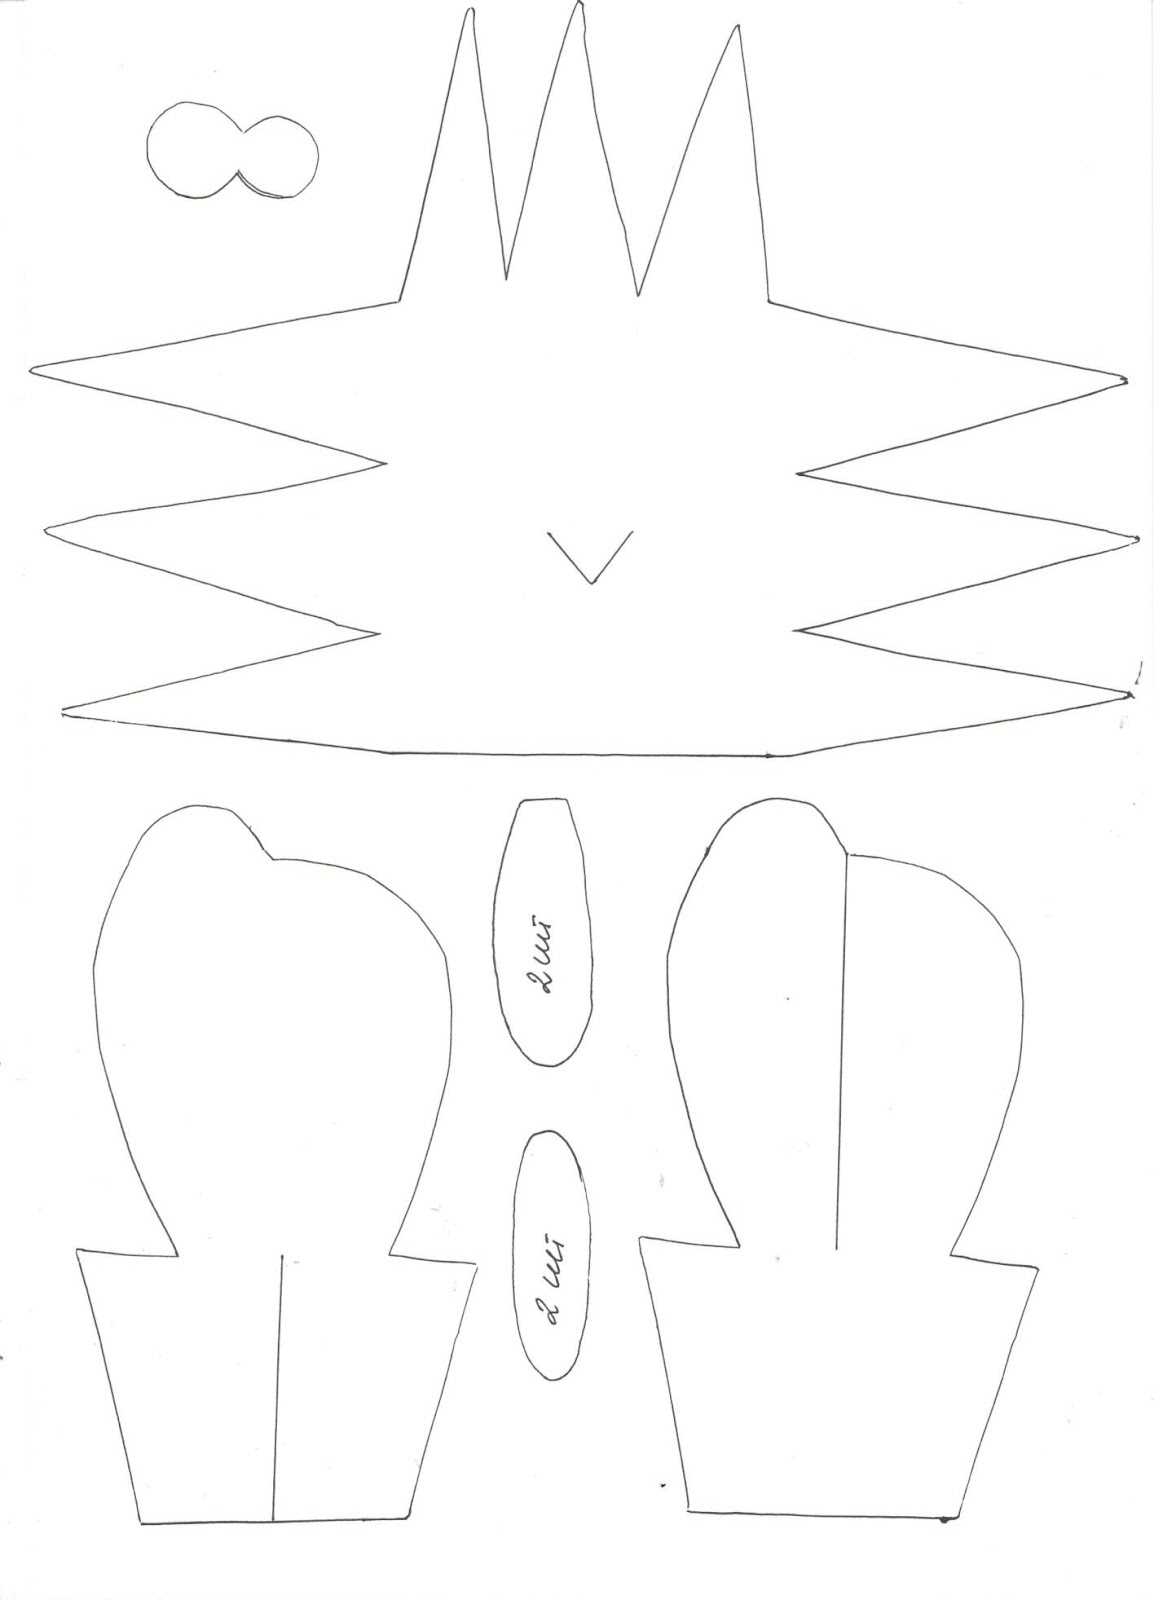 Лось аристотель из бумаги и дятел тюк-тюк (мультфильм бумажки) своими руками